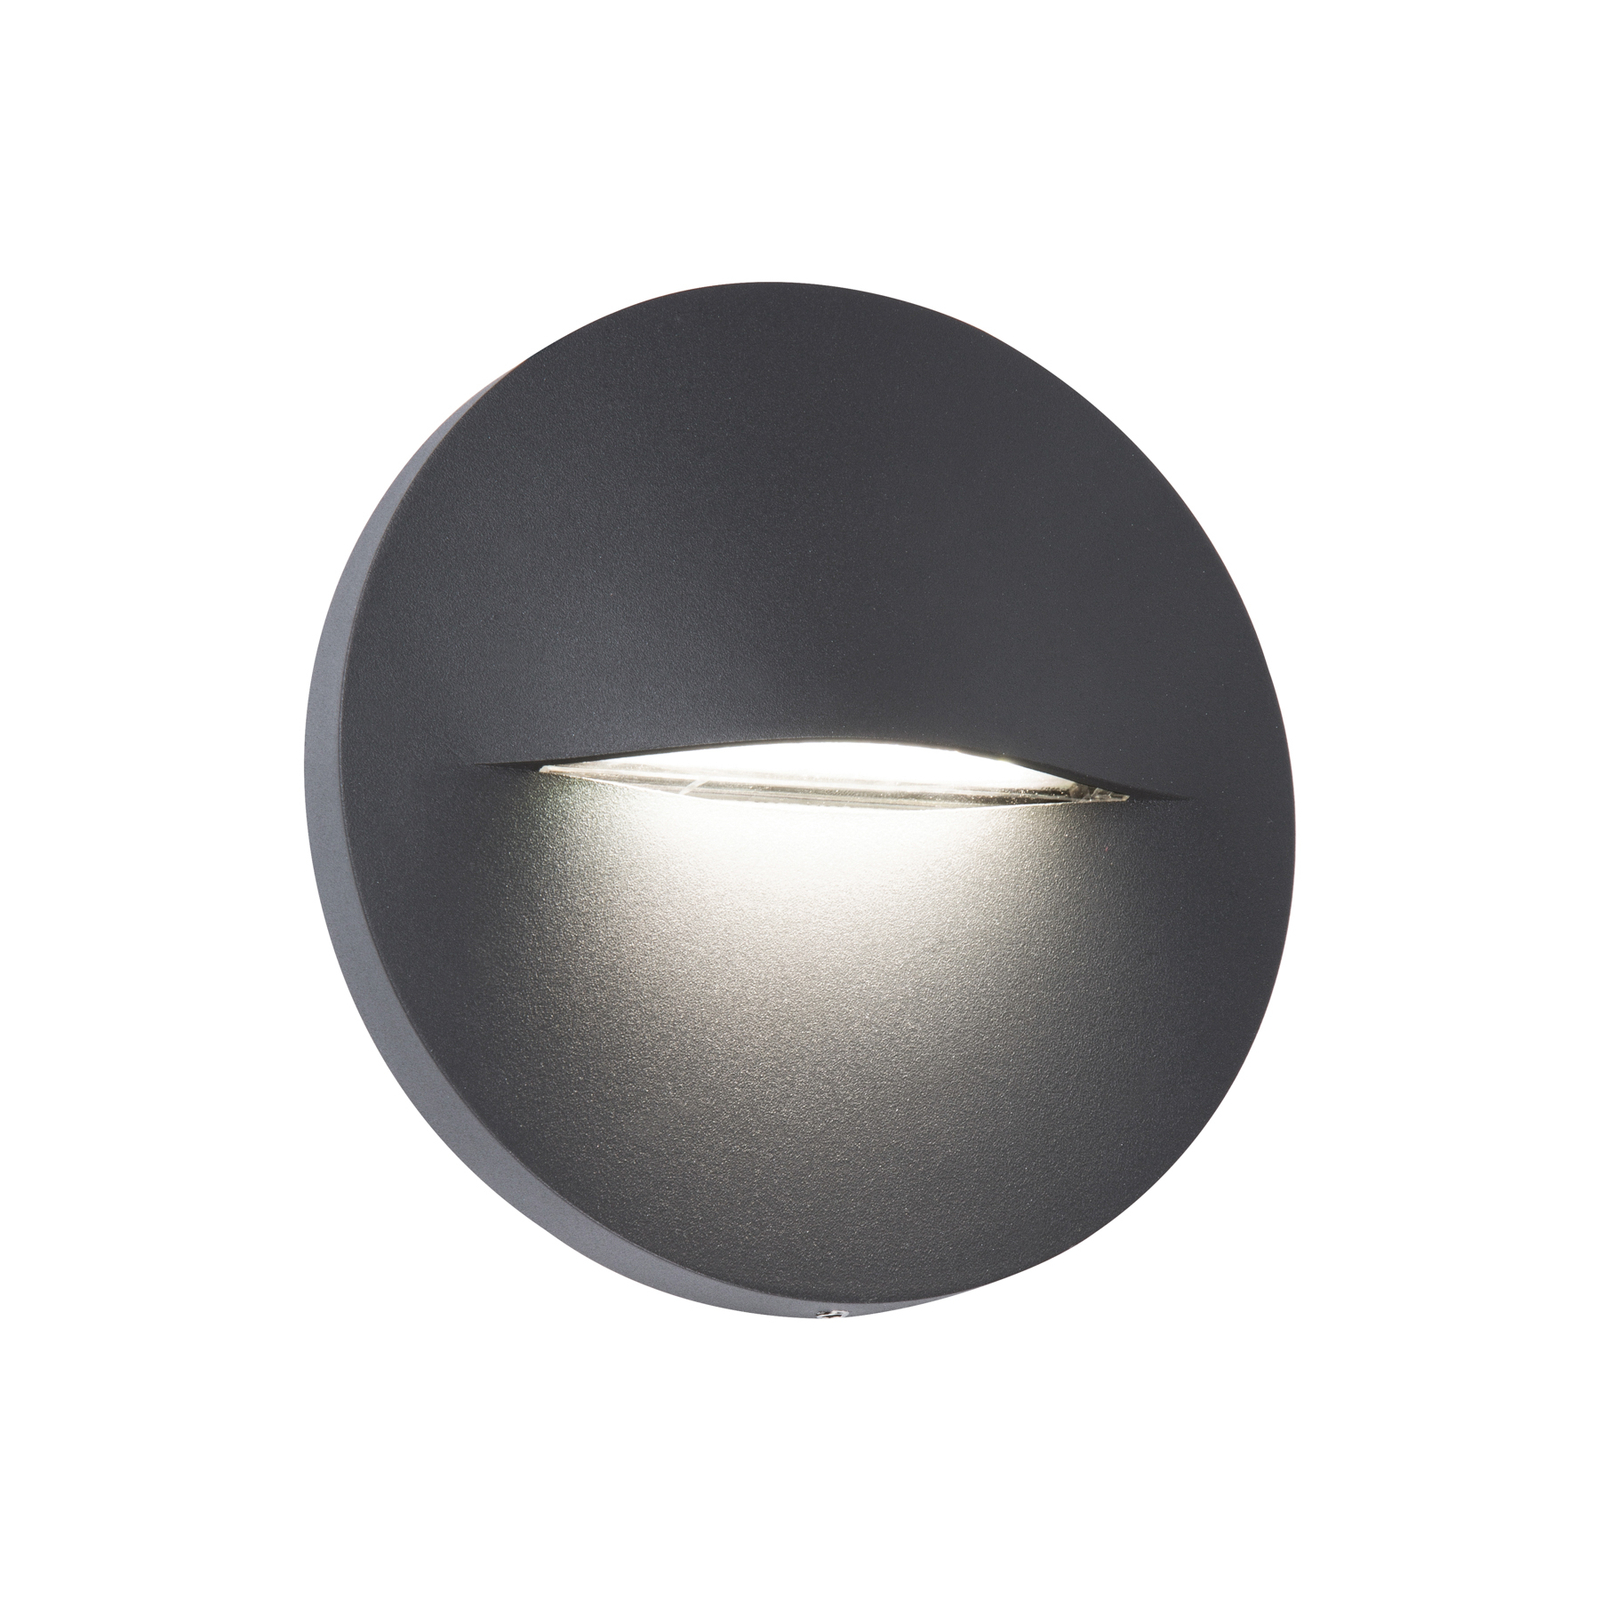 Aplique de exterior LED Vita, gris oscuro, Ø 14 cm